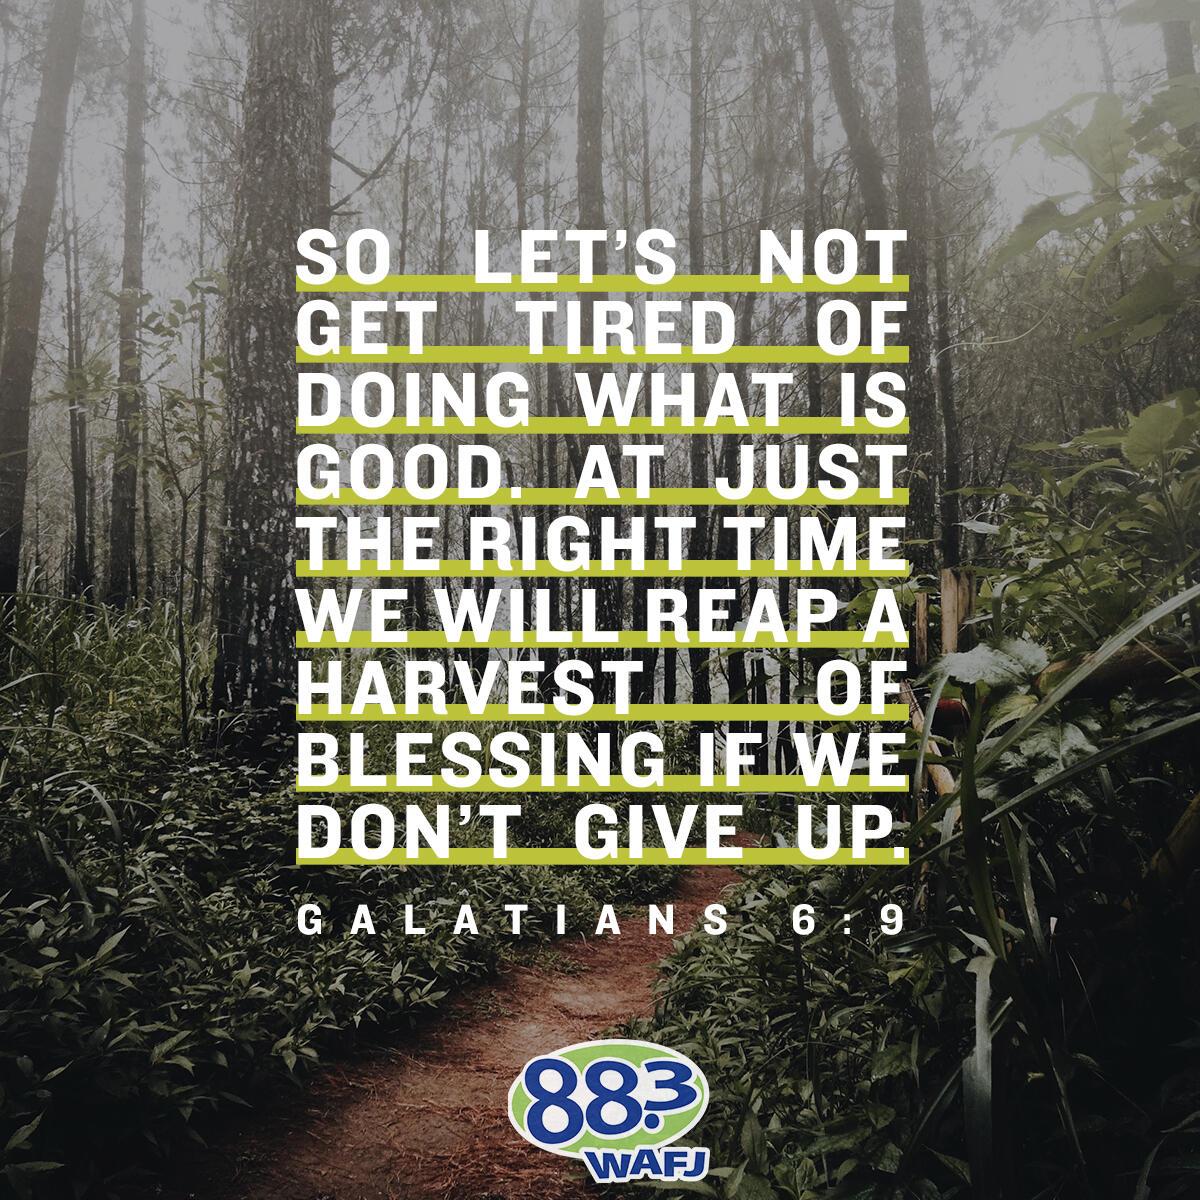 Galatians 6:9